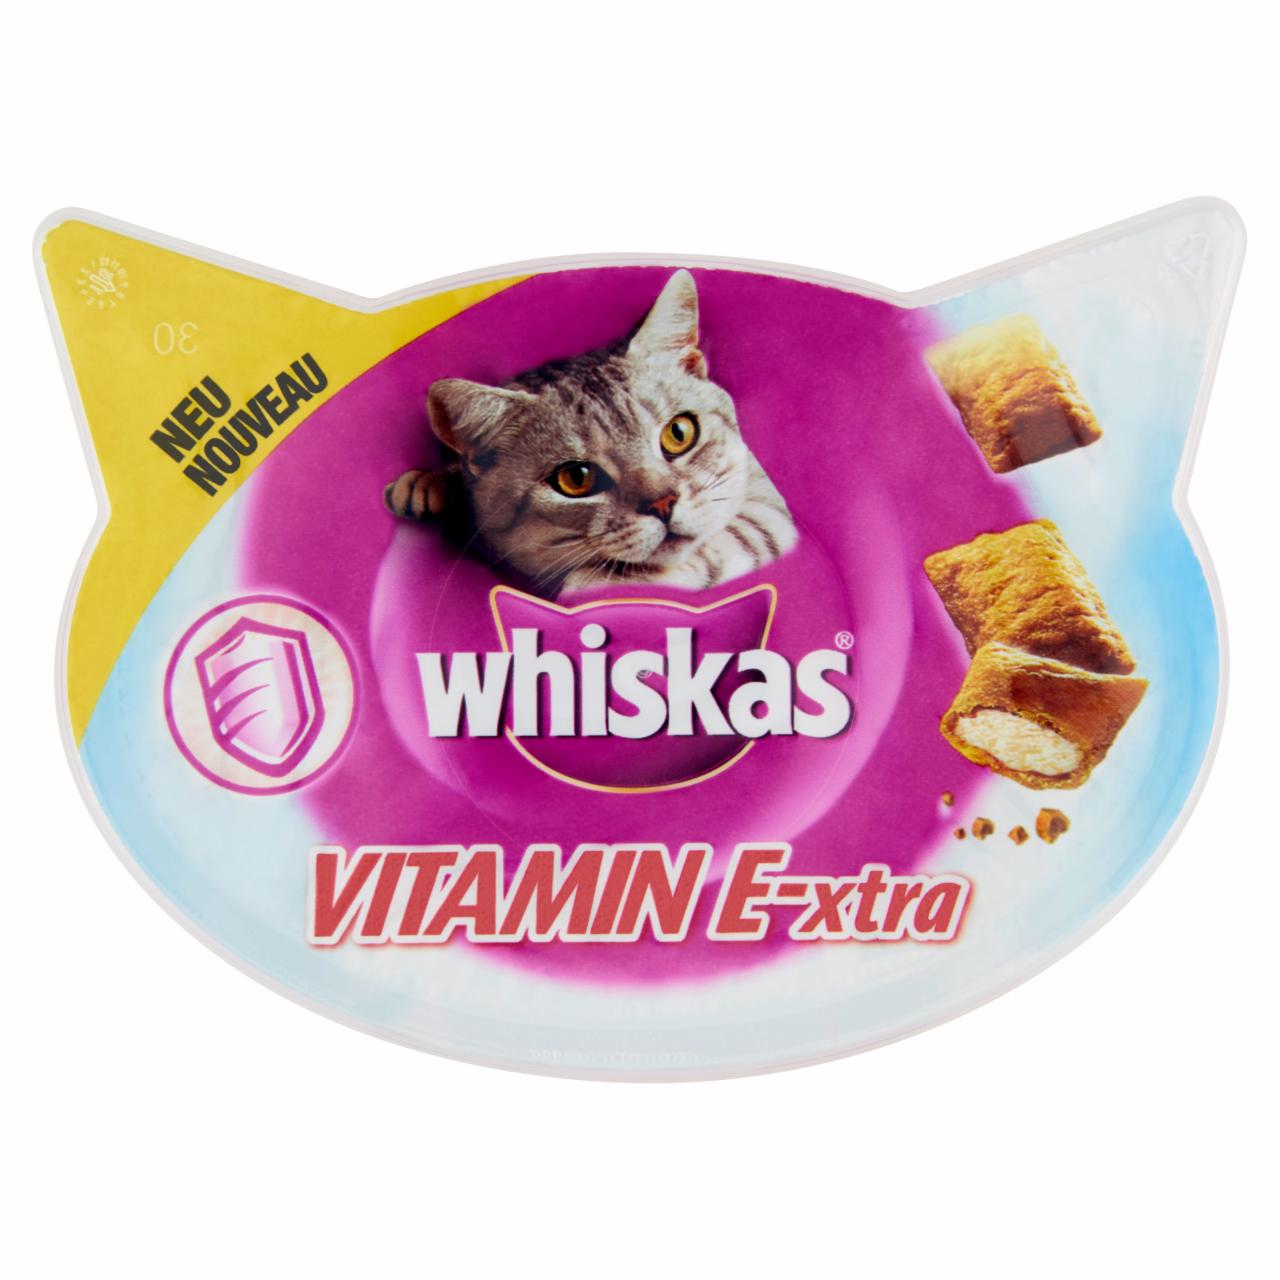 Képek - Whiskas Vitamin E-xtra kiegészítő állateledel felnőtt macskák számára csirkehússal 50 g